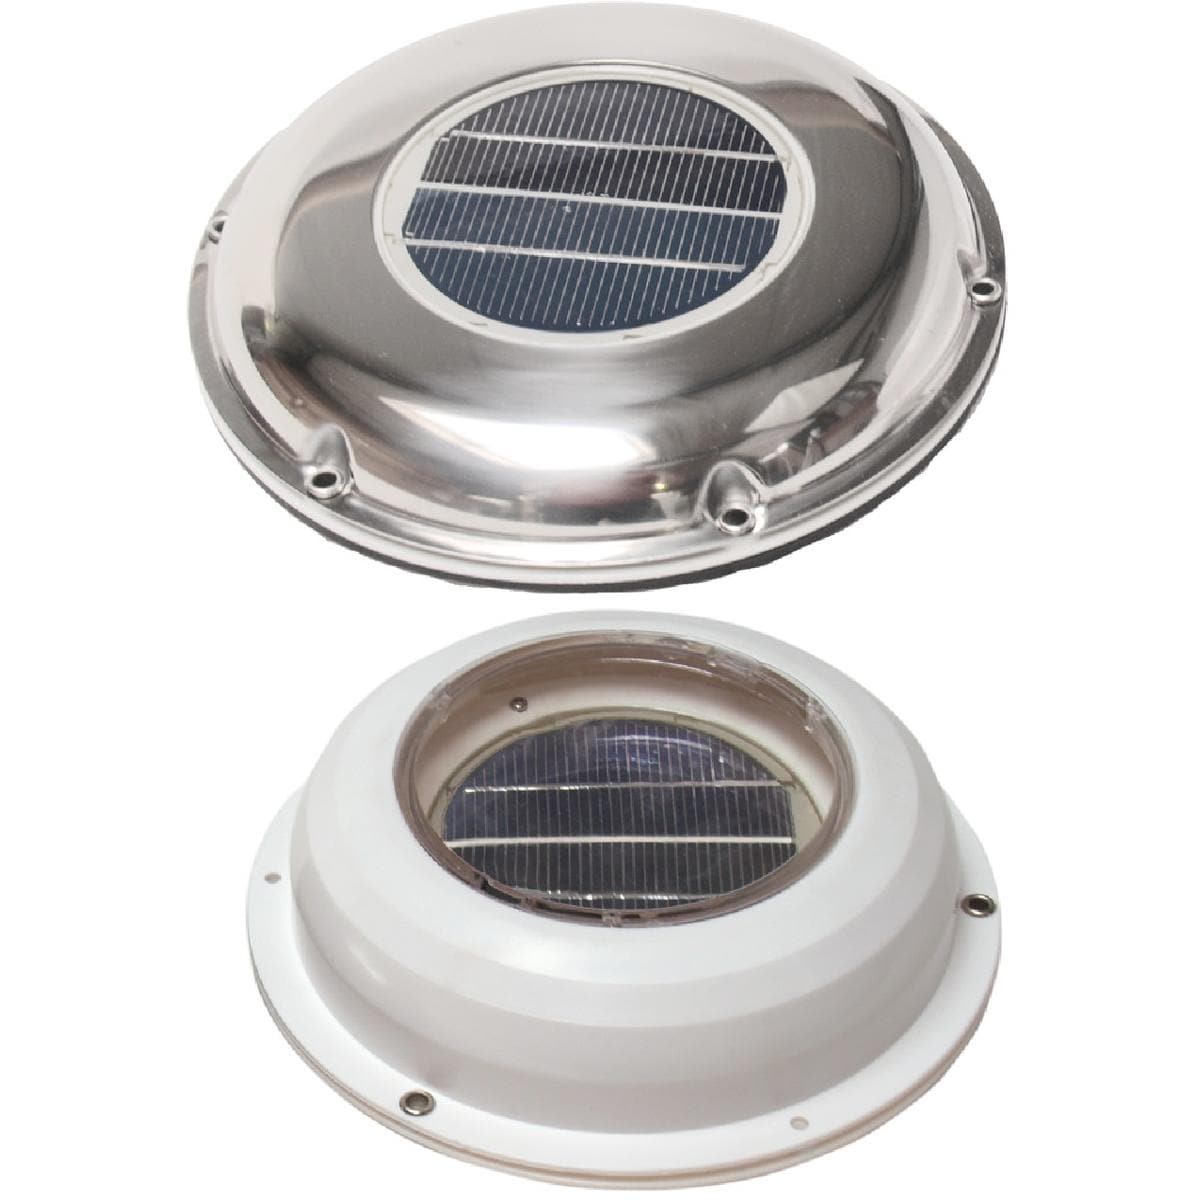 Carbest Solarventilator mit Schalter - Ø 215 mm